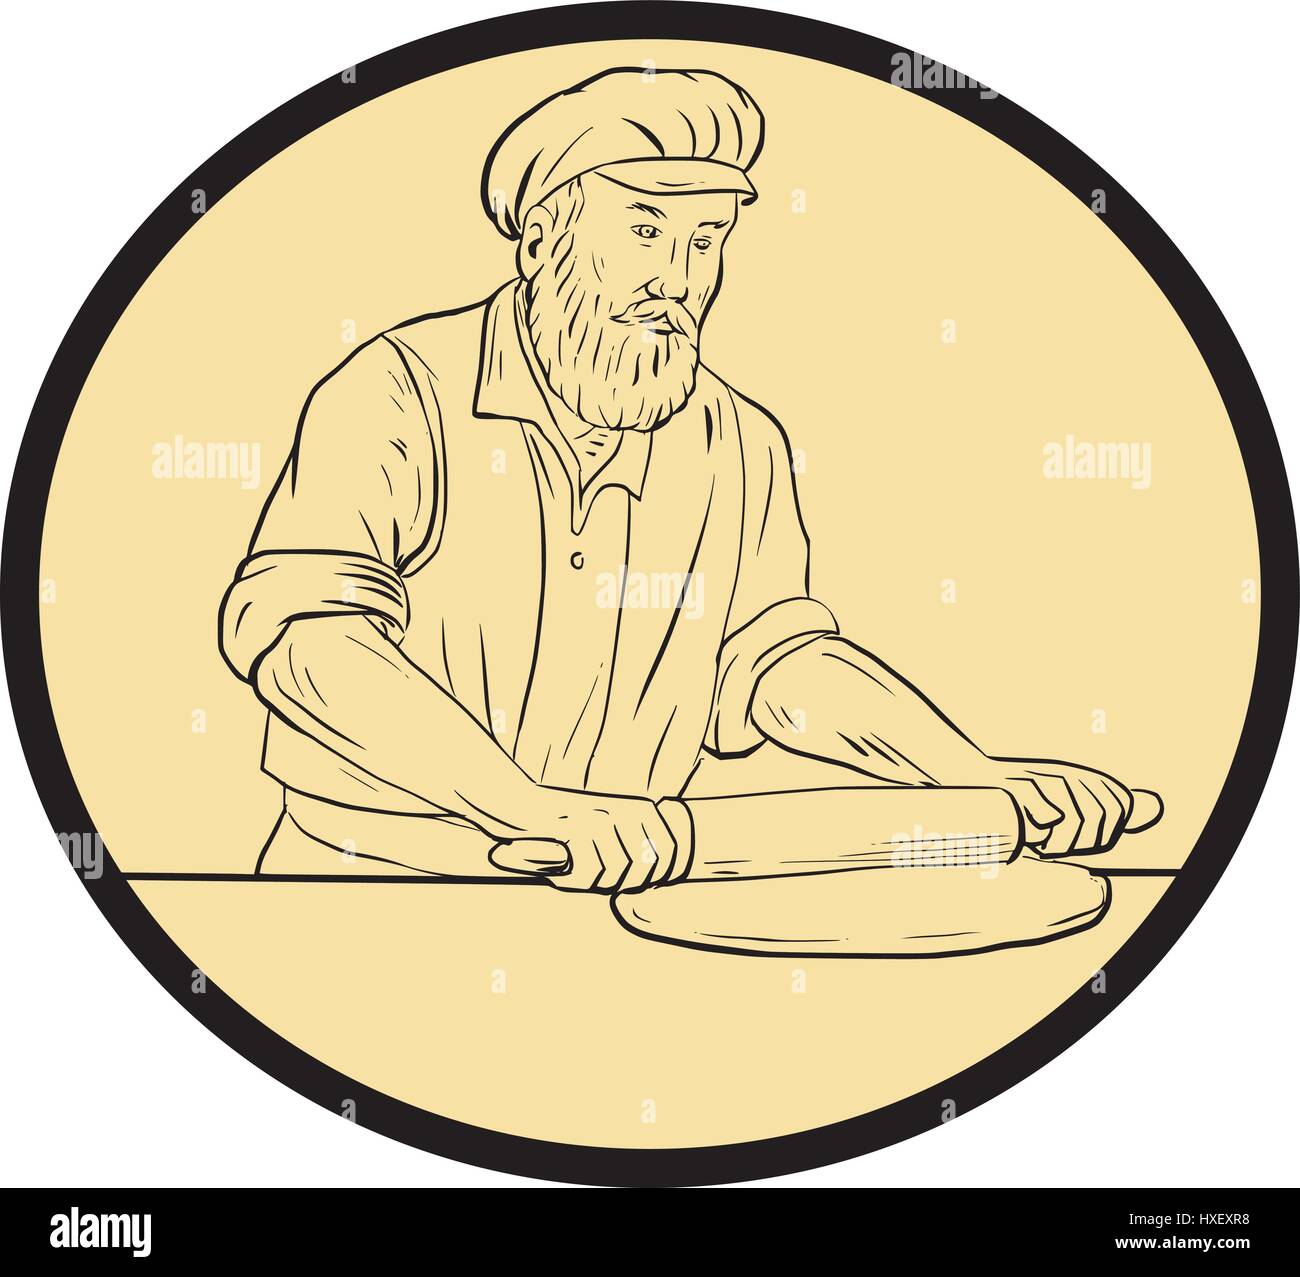 Croquis dessin illustration style de chef cuisinier d'un boulanger à l'époque médiévale holding rouleau à pâte sur le matériel roulant vue de l'avant ensemble à l'intérieur de la forme ovale Illustration de Vecteur